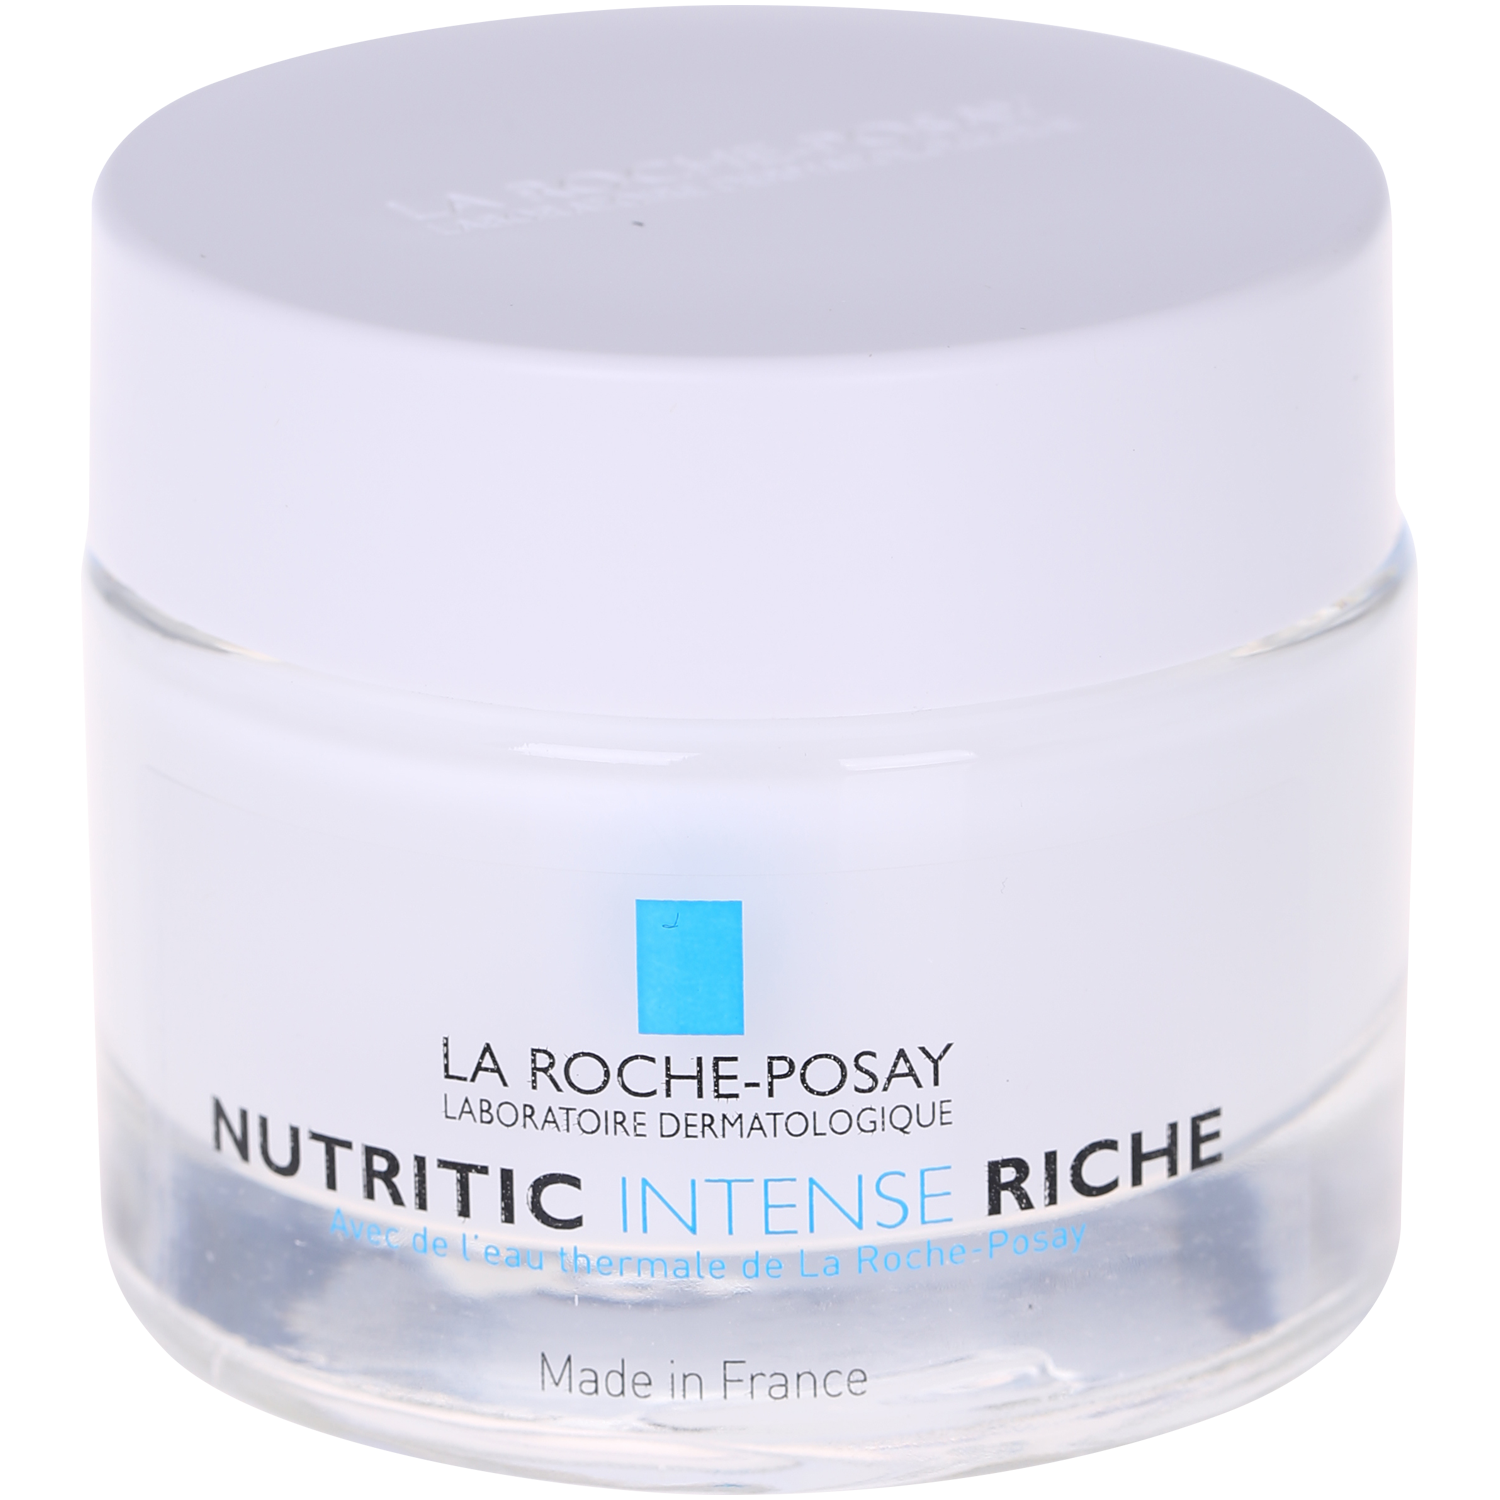 La Roche-Posay Nutritic Intense Riche питательный и регенерирующий крем для лица, 50 мл